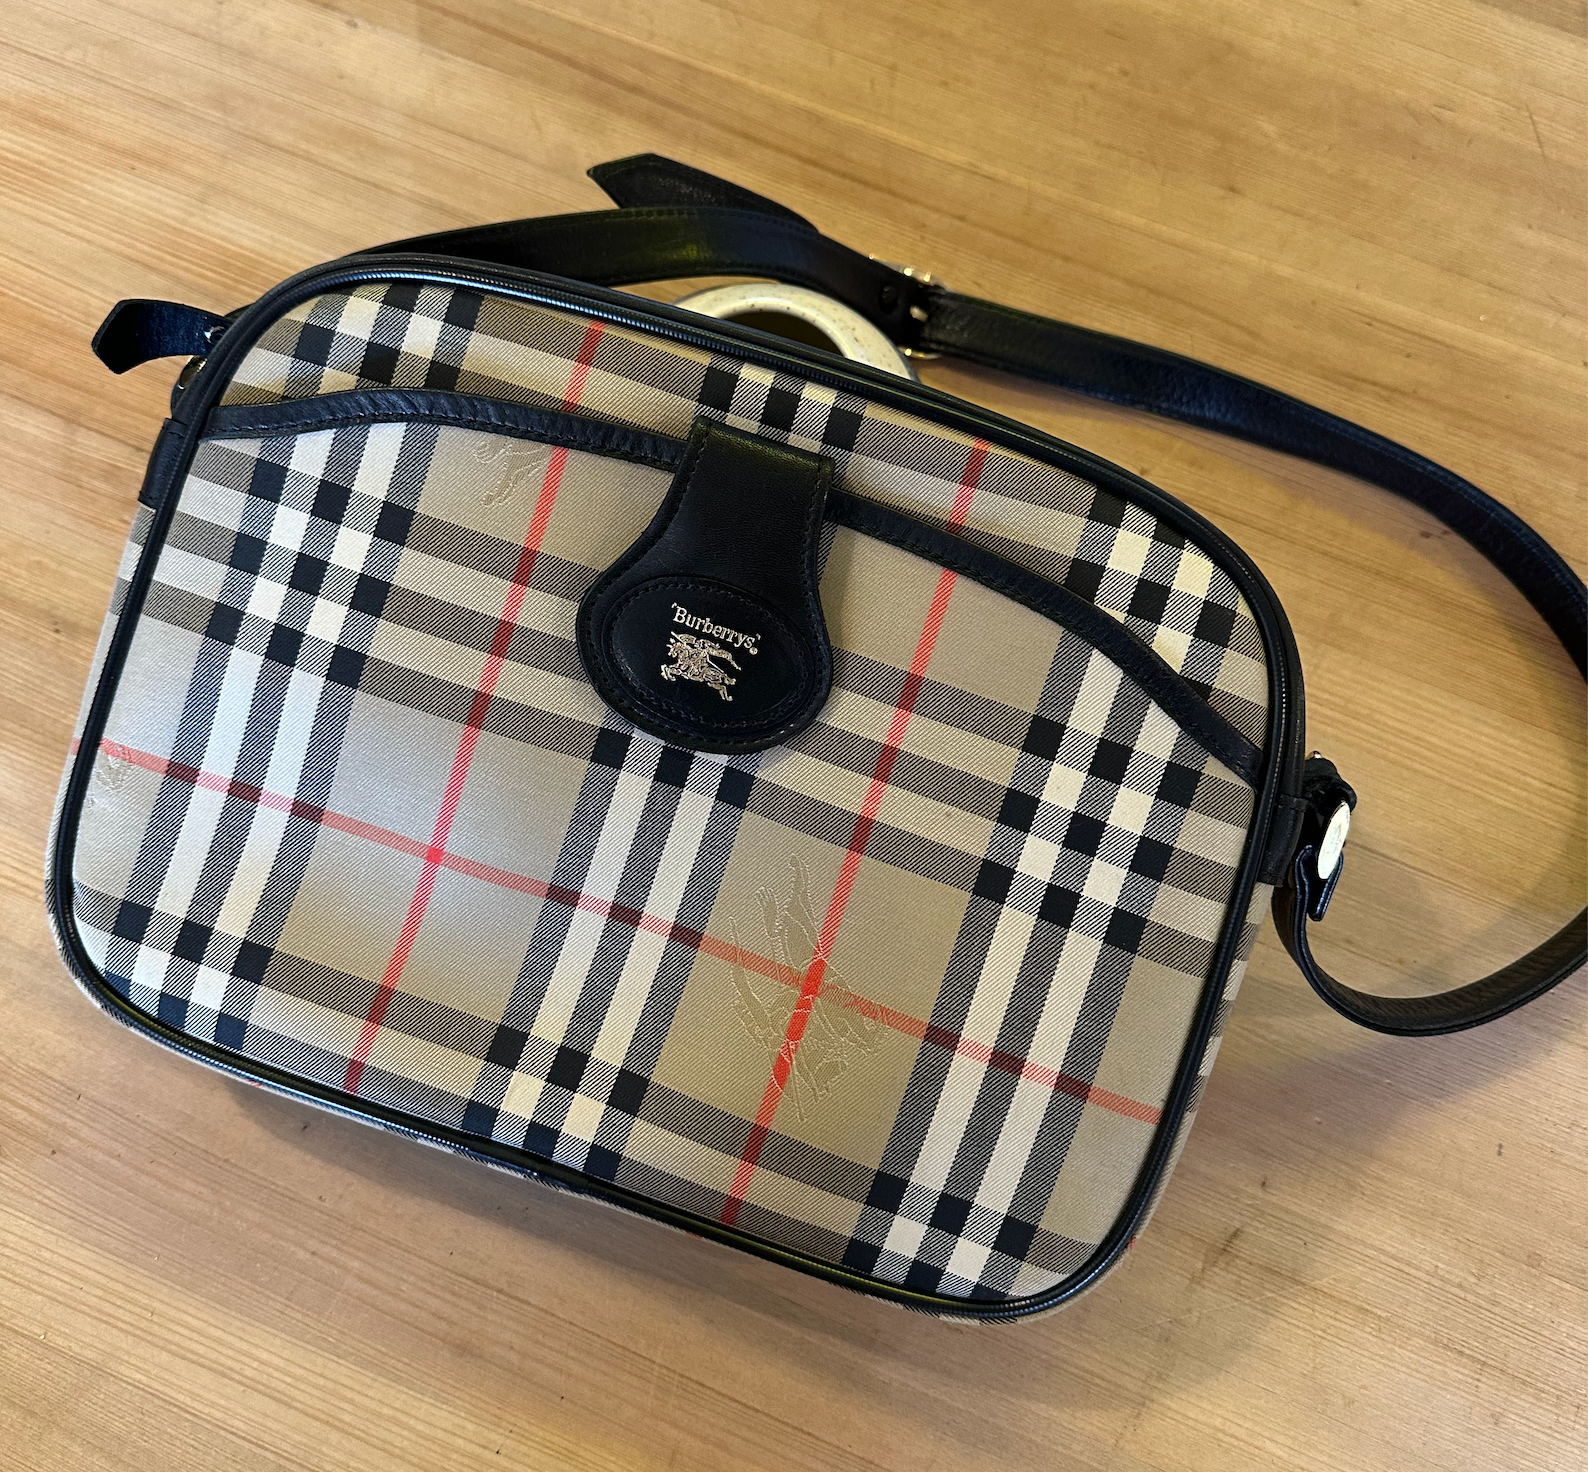 Vintage Burberry Messenger Bag Nova Check Shoulderbag